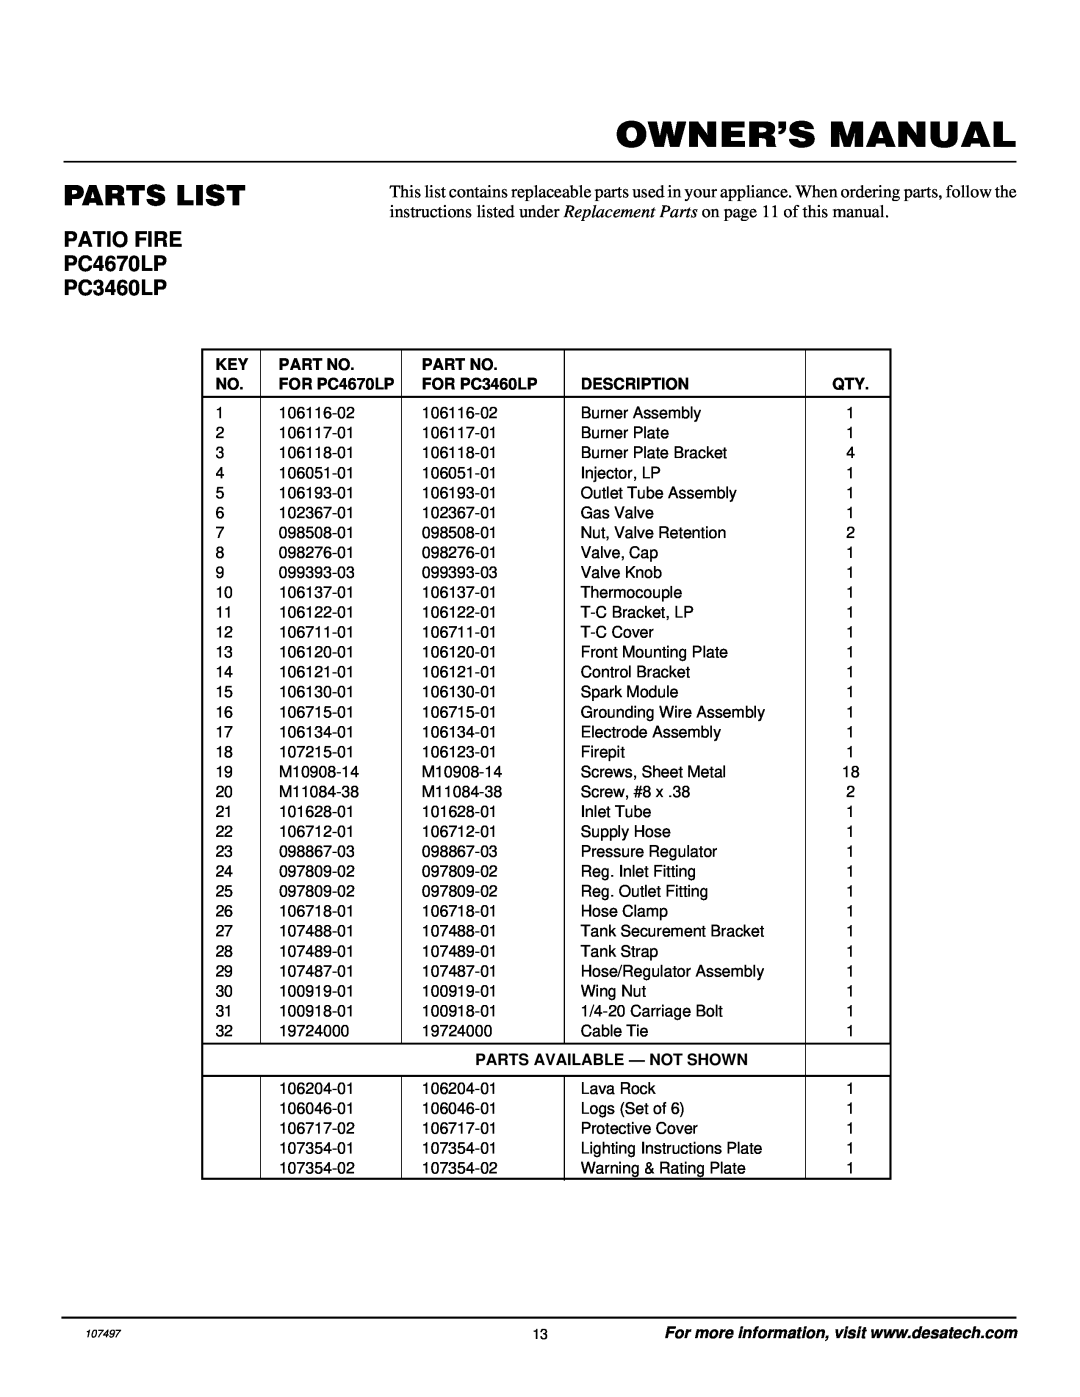 Desa Tech installation manual Parts List, FOR PC4670LP, FOR PC3460LP, Description, Parts Available - Not Shown 